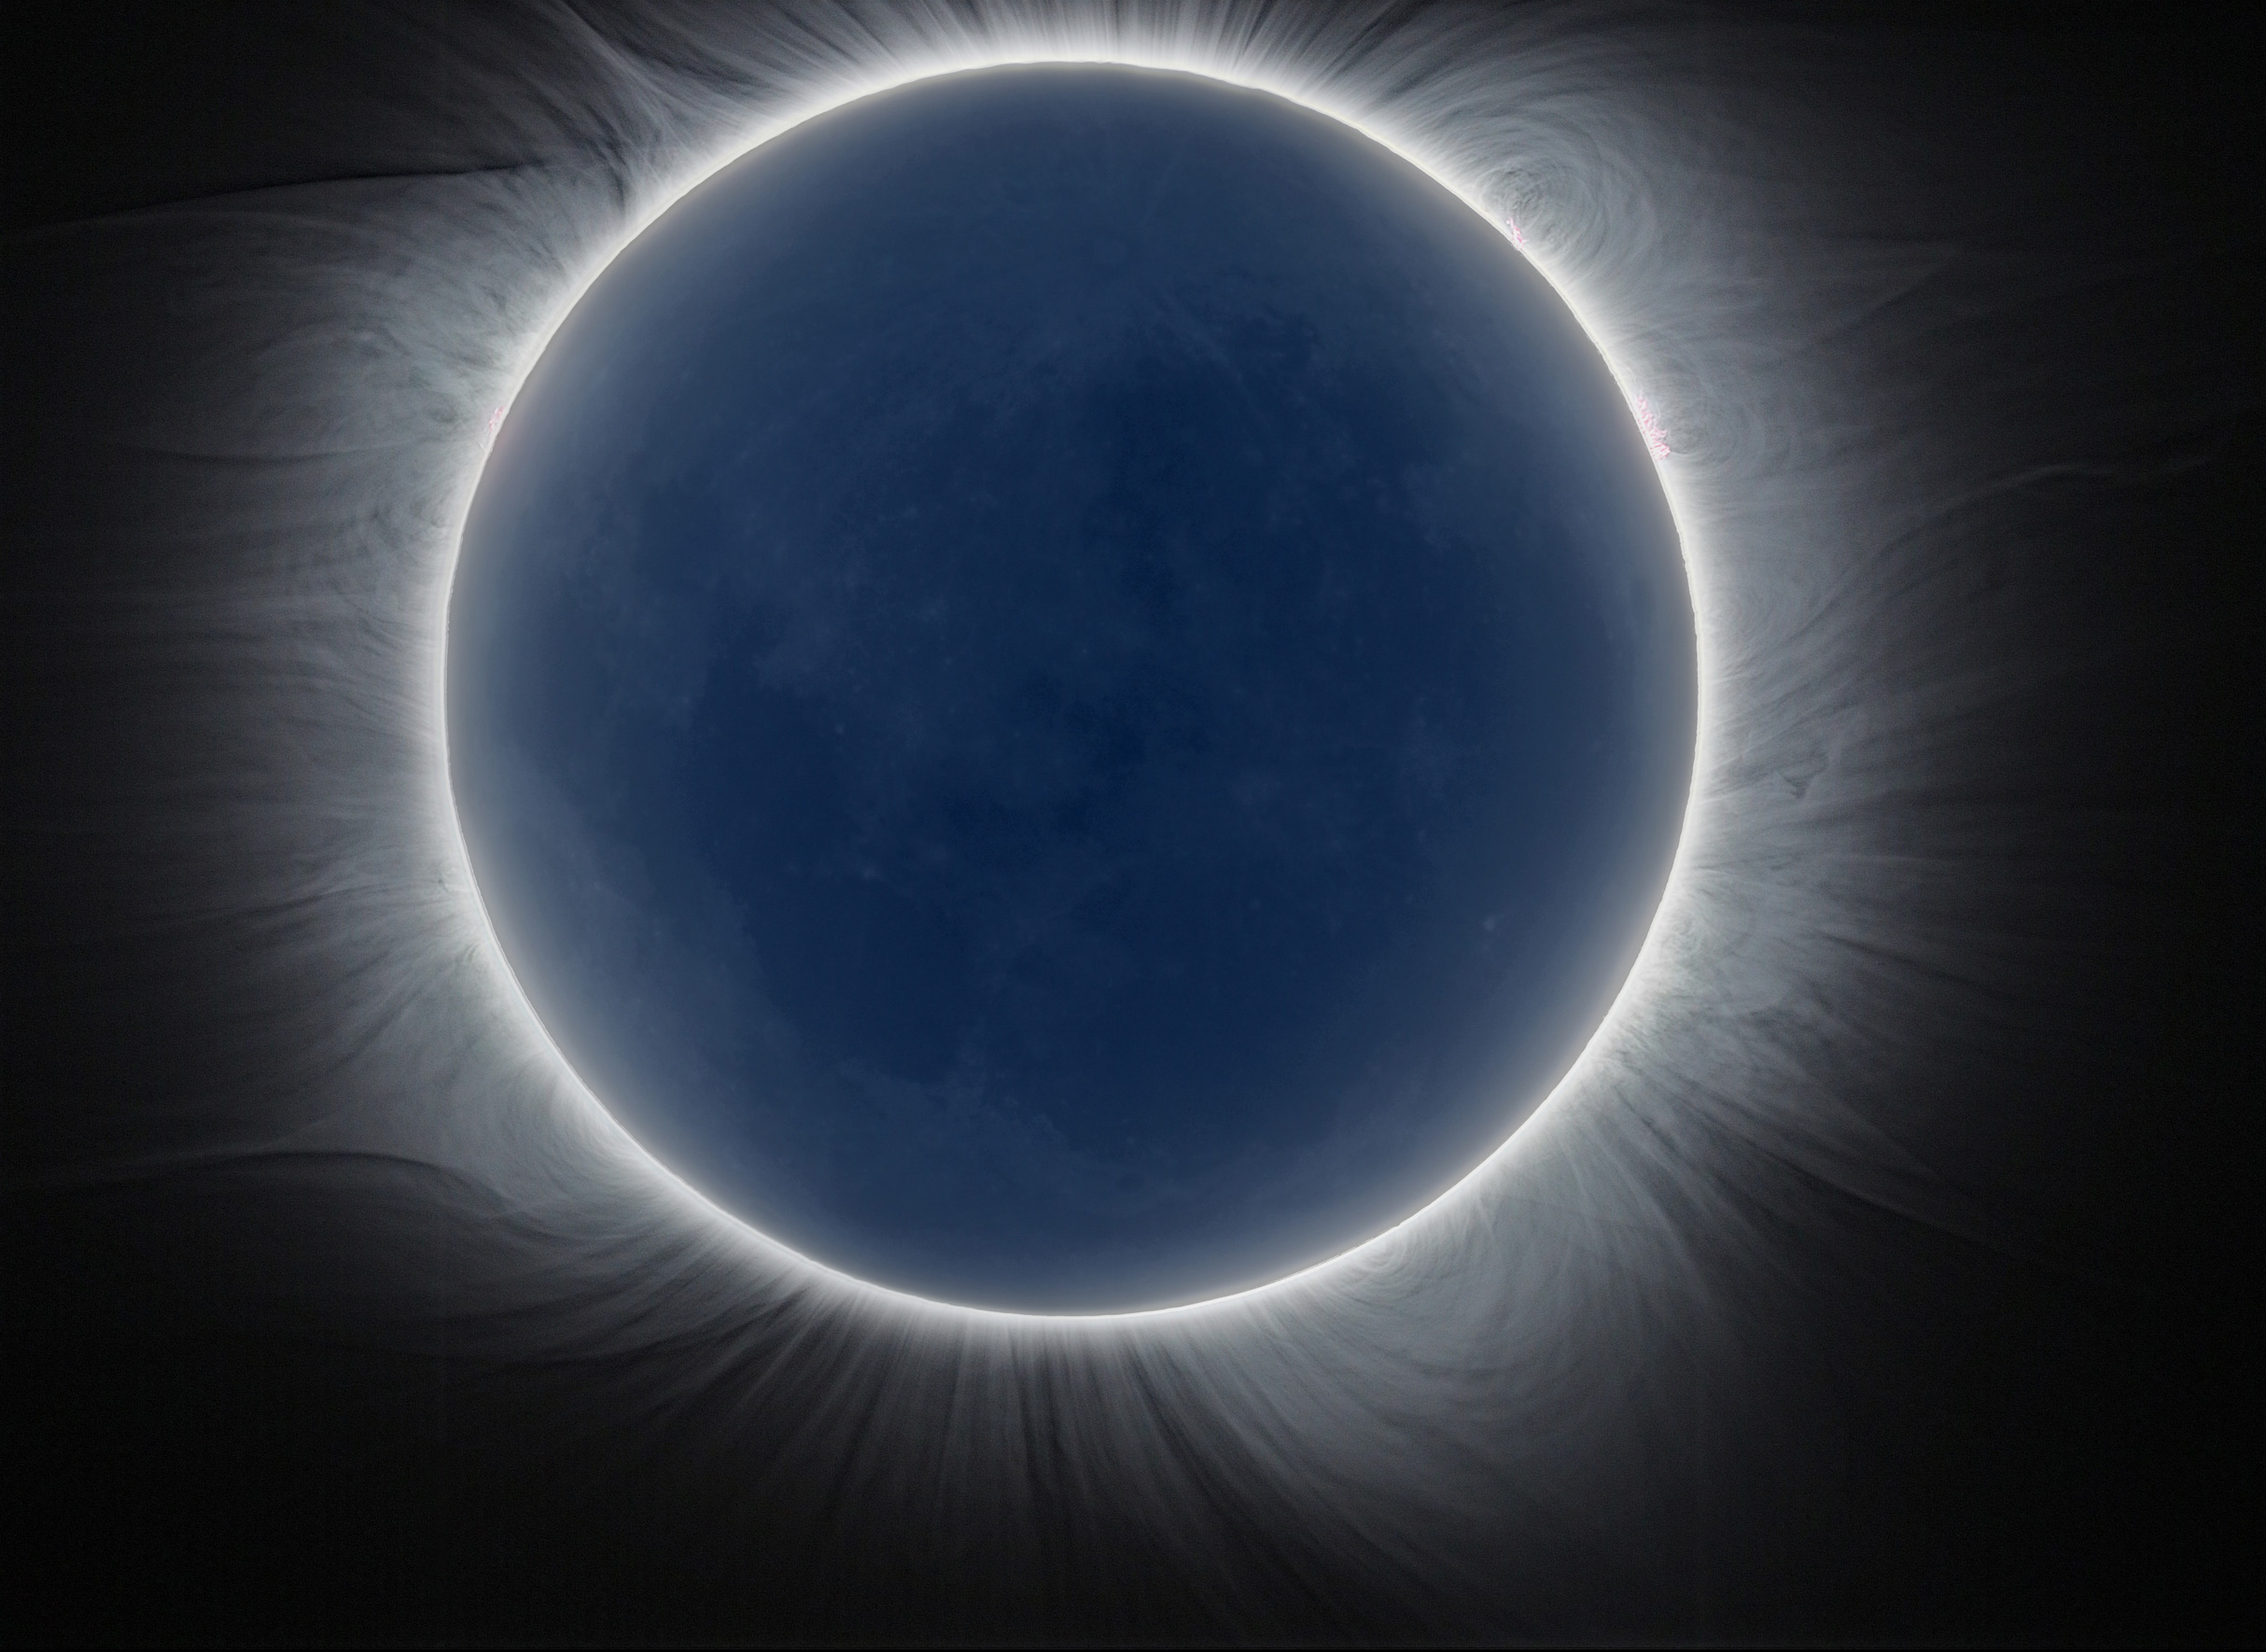 En images : l'éclipse totale du Soleil du 9 mars 2016 